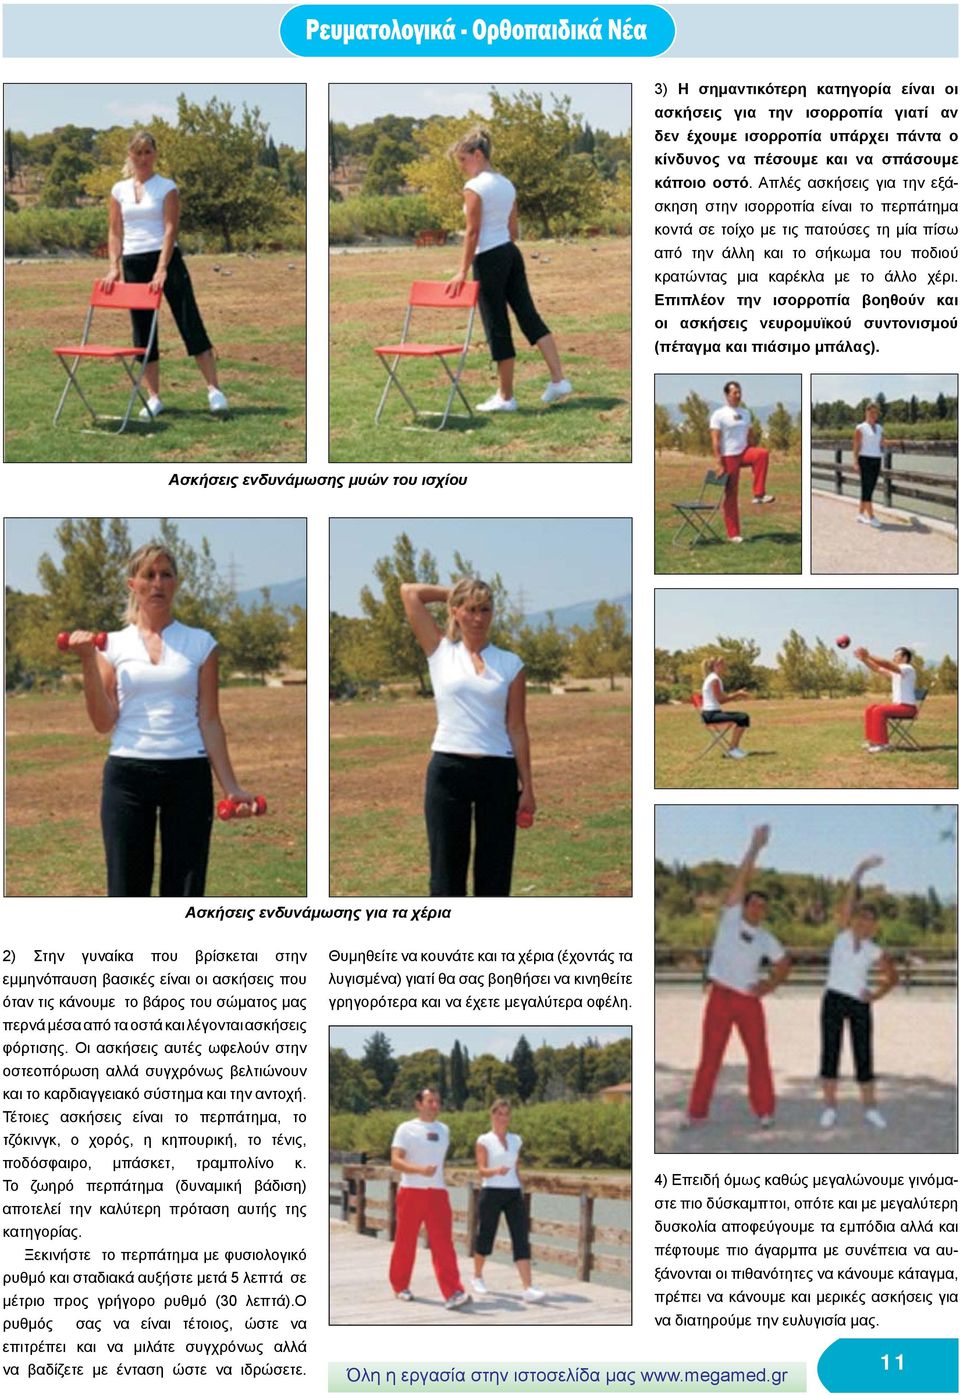 Επιπλέον την ισορροπία βοηθούν και οι ασκήσεις νευρομυϊκού συντονισμού (πέταγμα και πιάσιμο μπάλας).